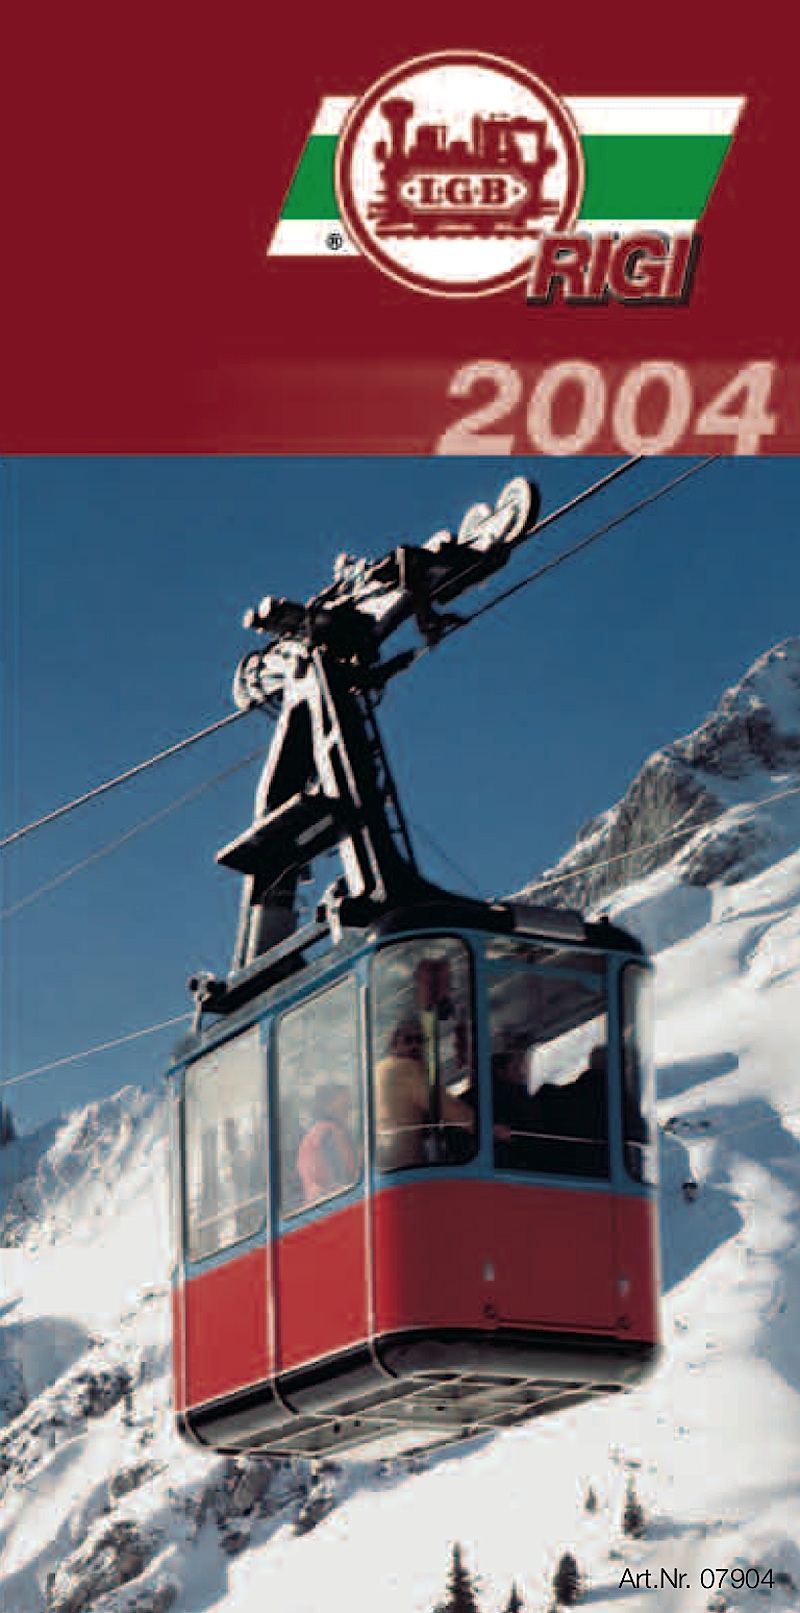 LGB Rigi Katalog (Catalogue) 2004